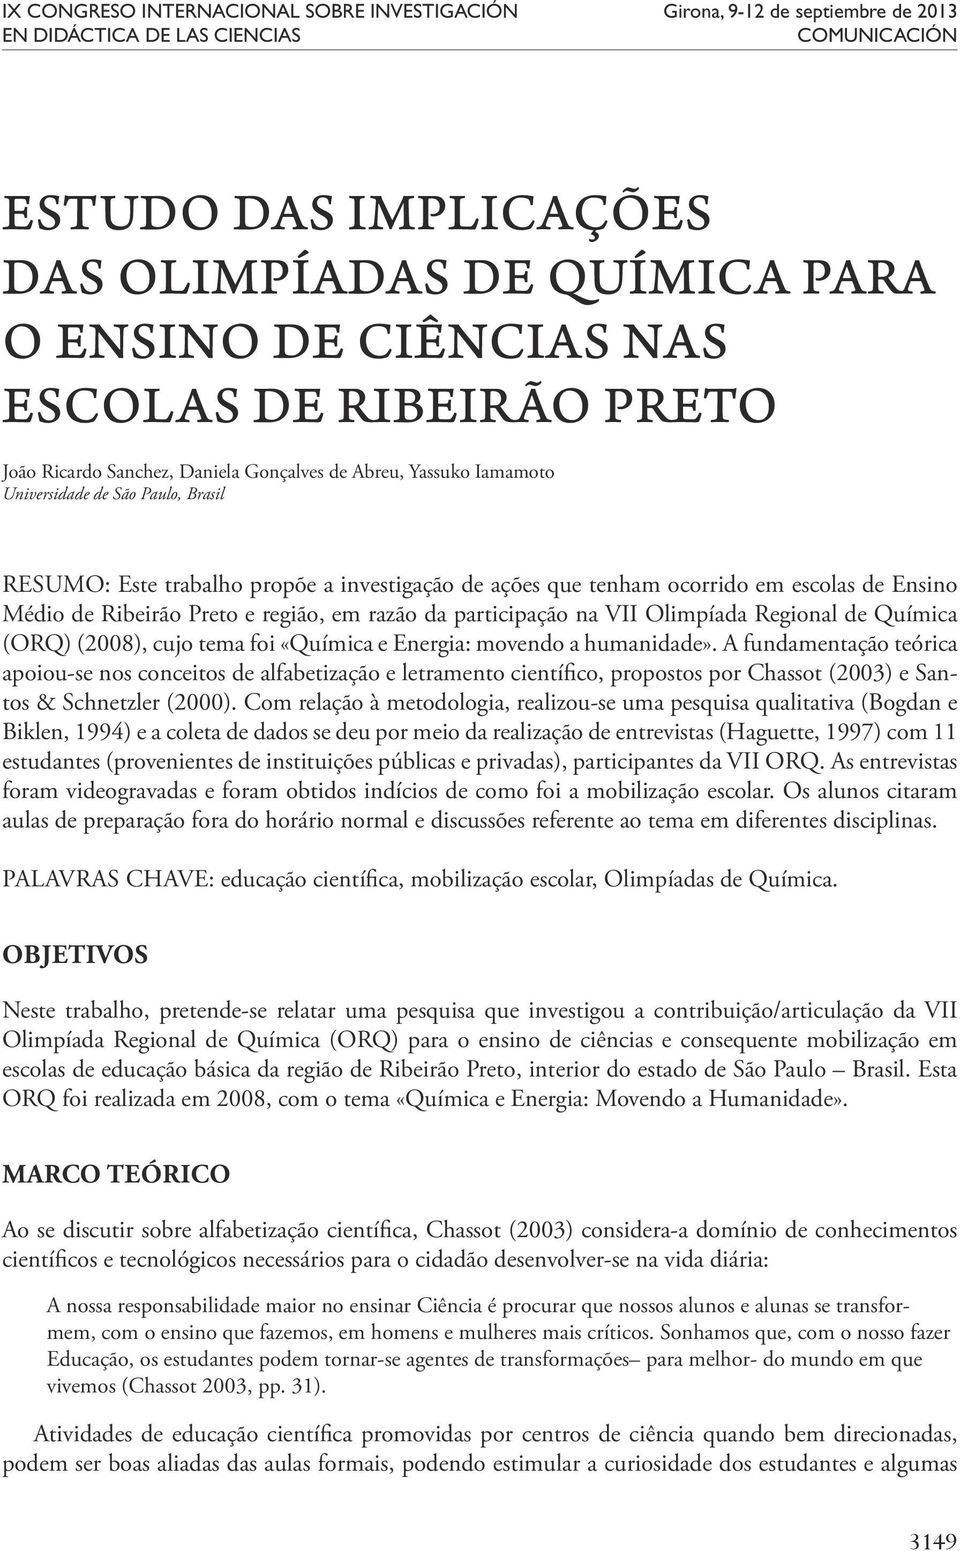 ocorrido em escolas de Ensino Médio de Ribeirão Preto e região, em razão da participação na VII Olimpíada Regional de Química (ORQ) (2008), cujo tema foi «Química e Energia: movendo a humanidade».